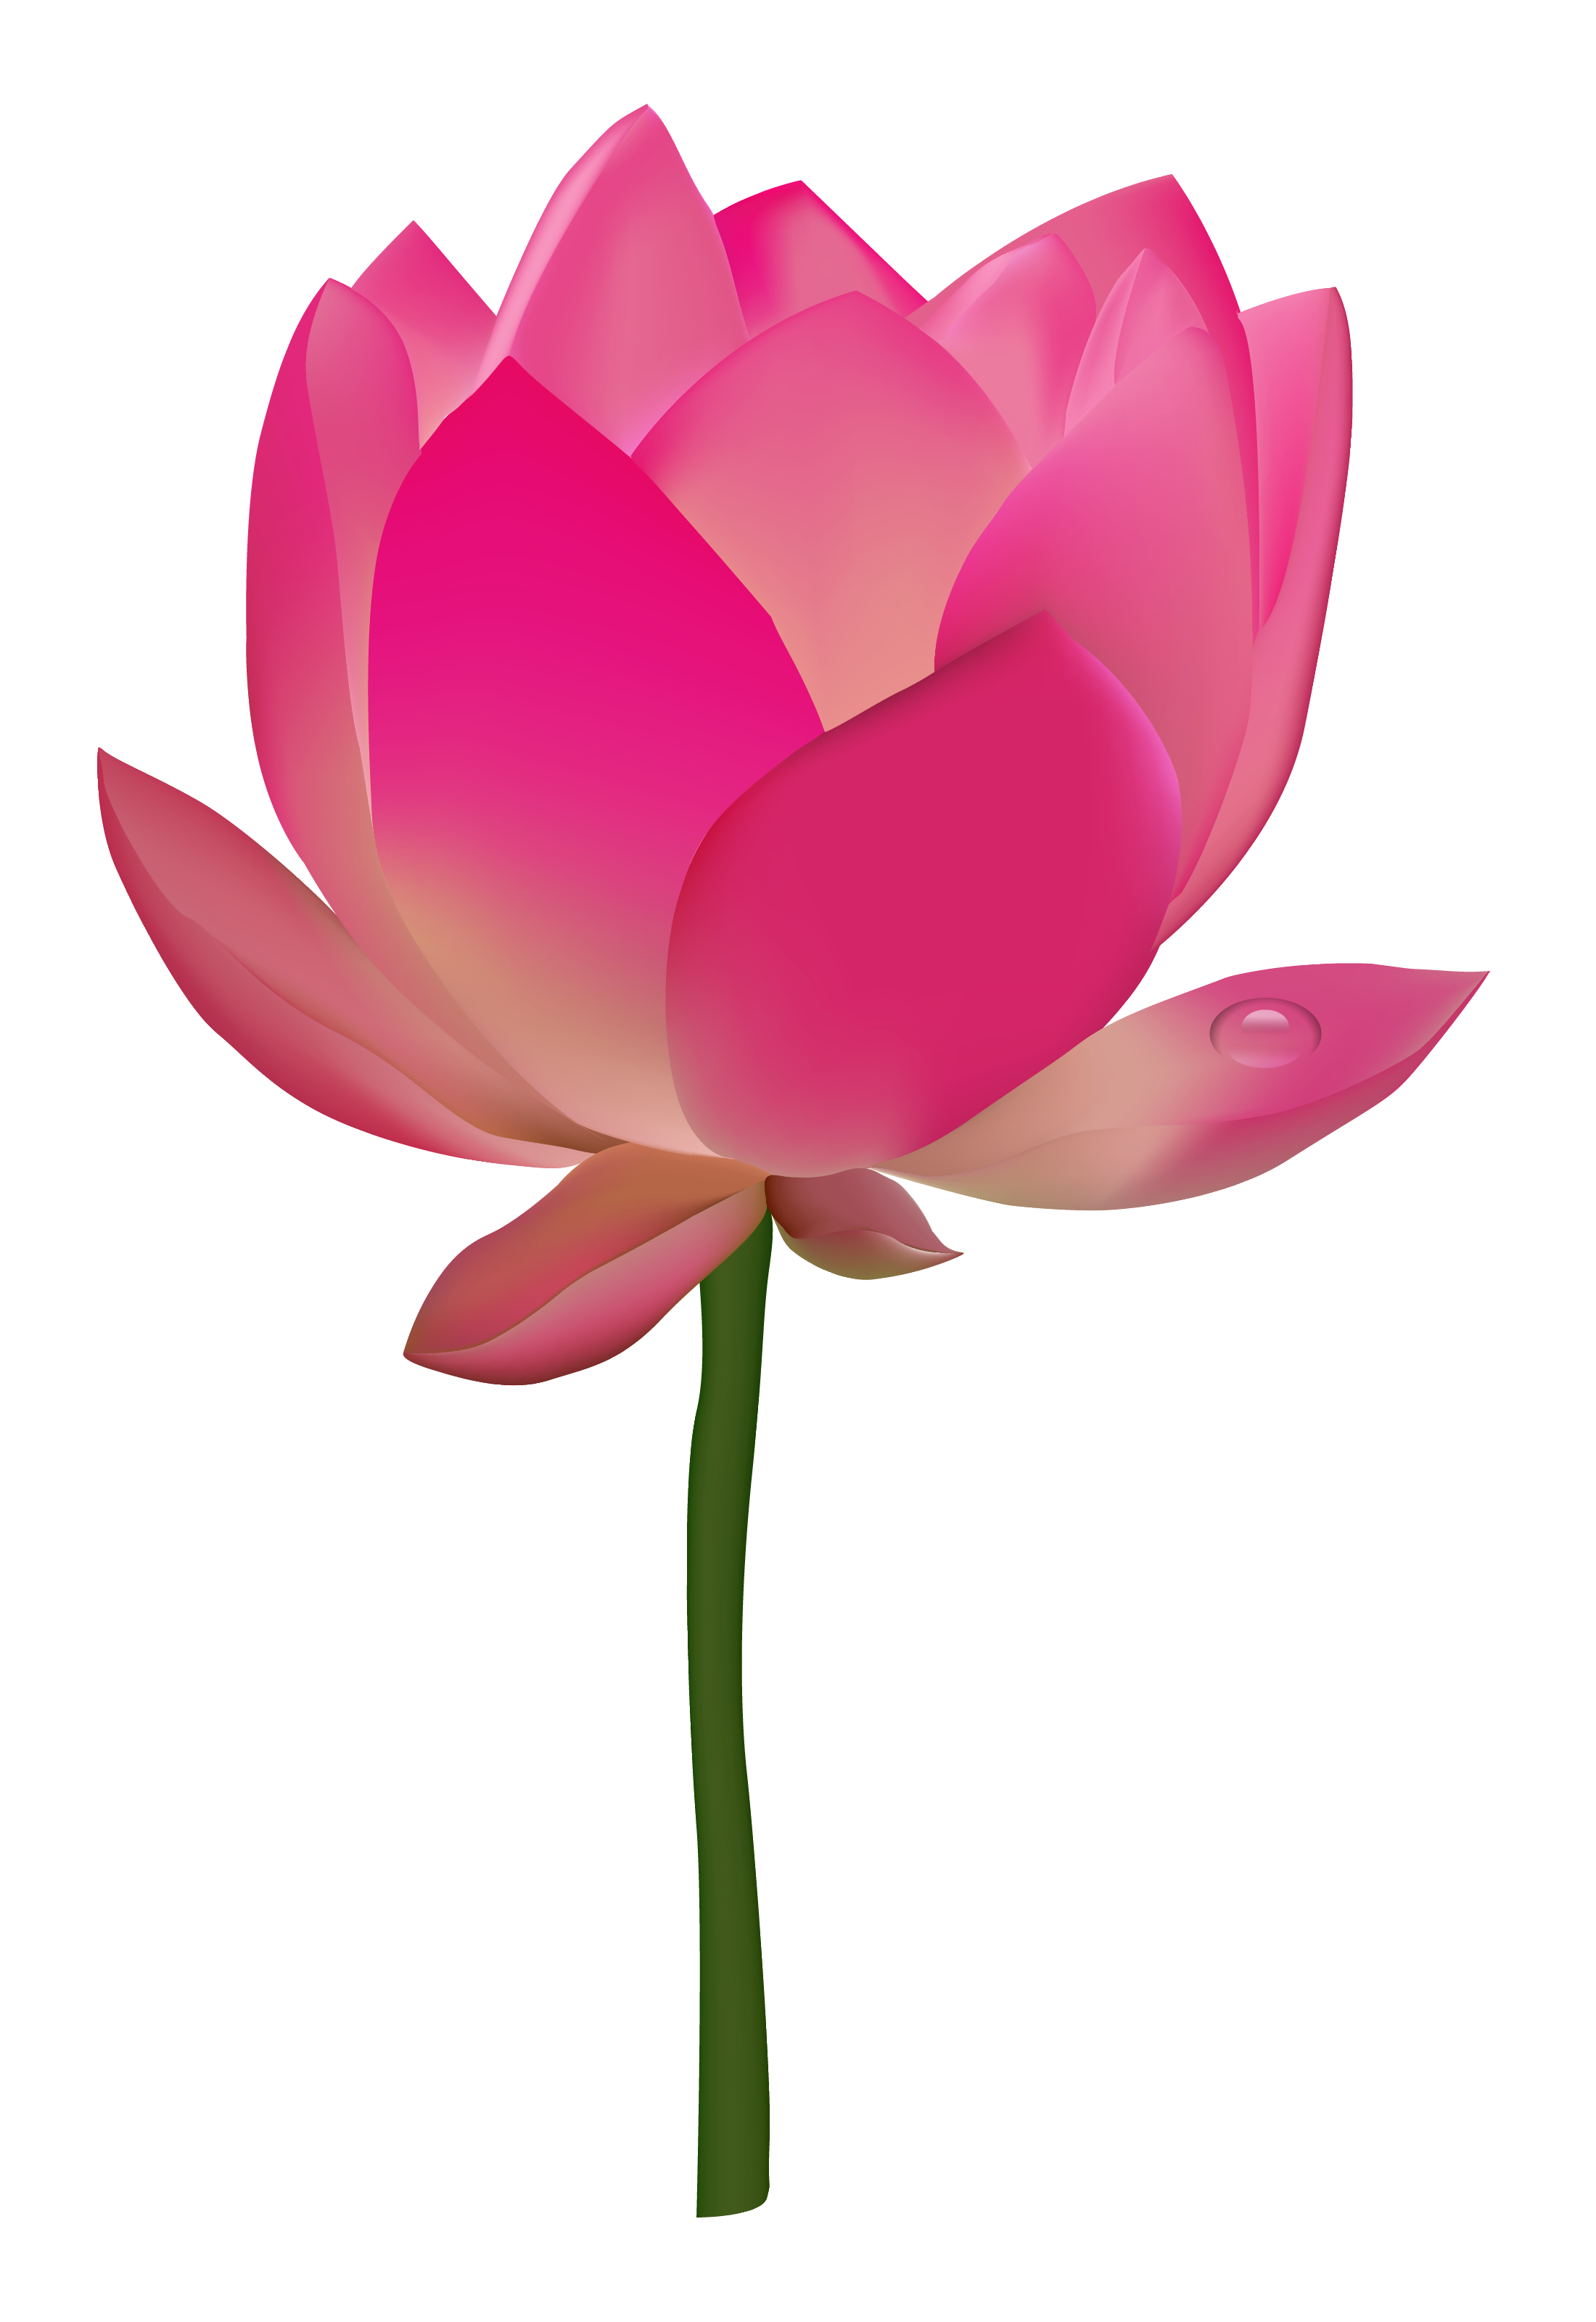 Lotus image purepng free. Flower png transparent